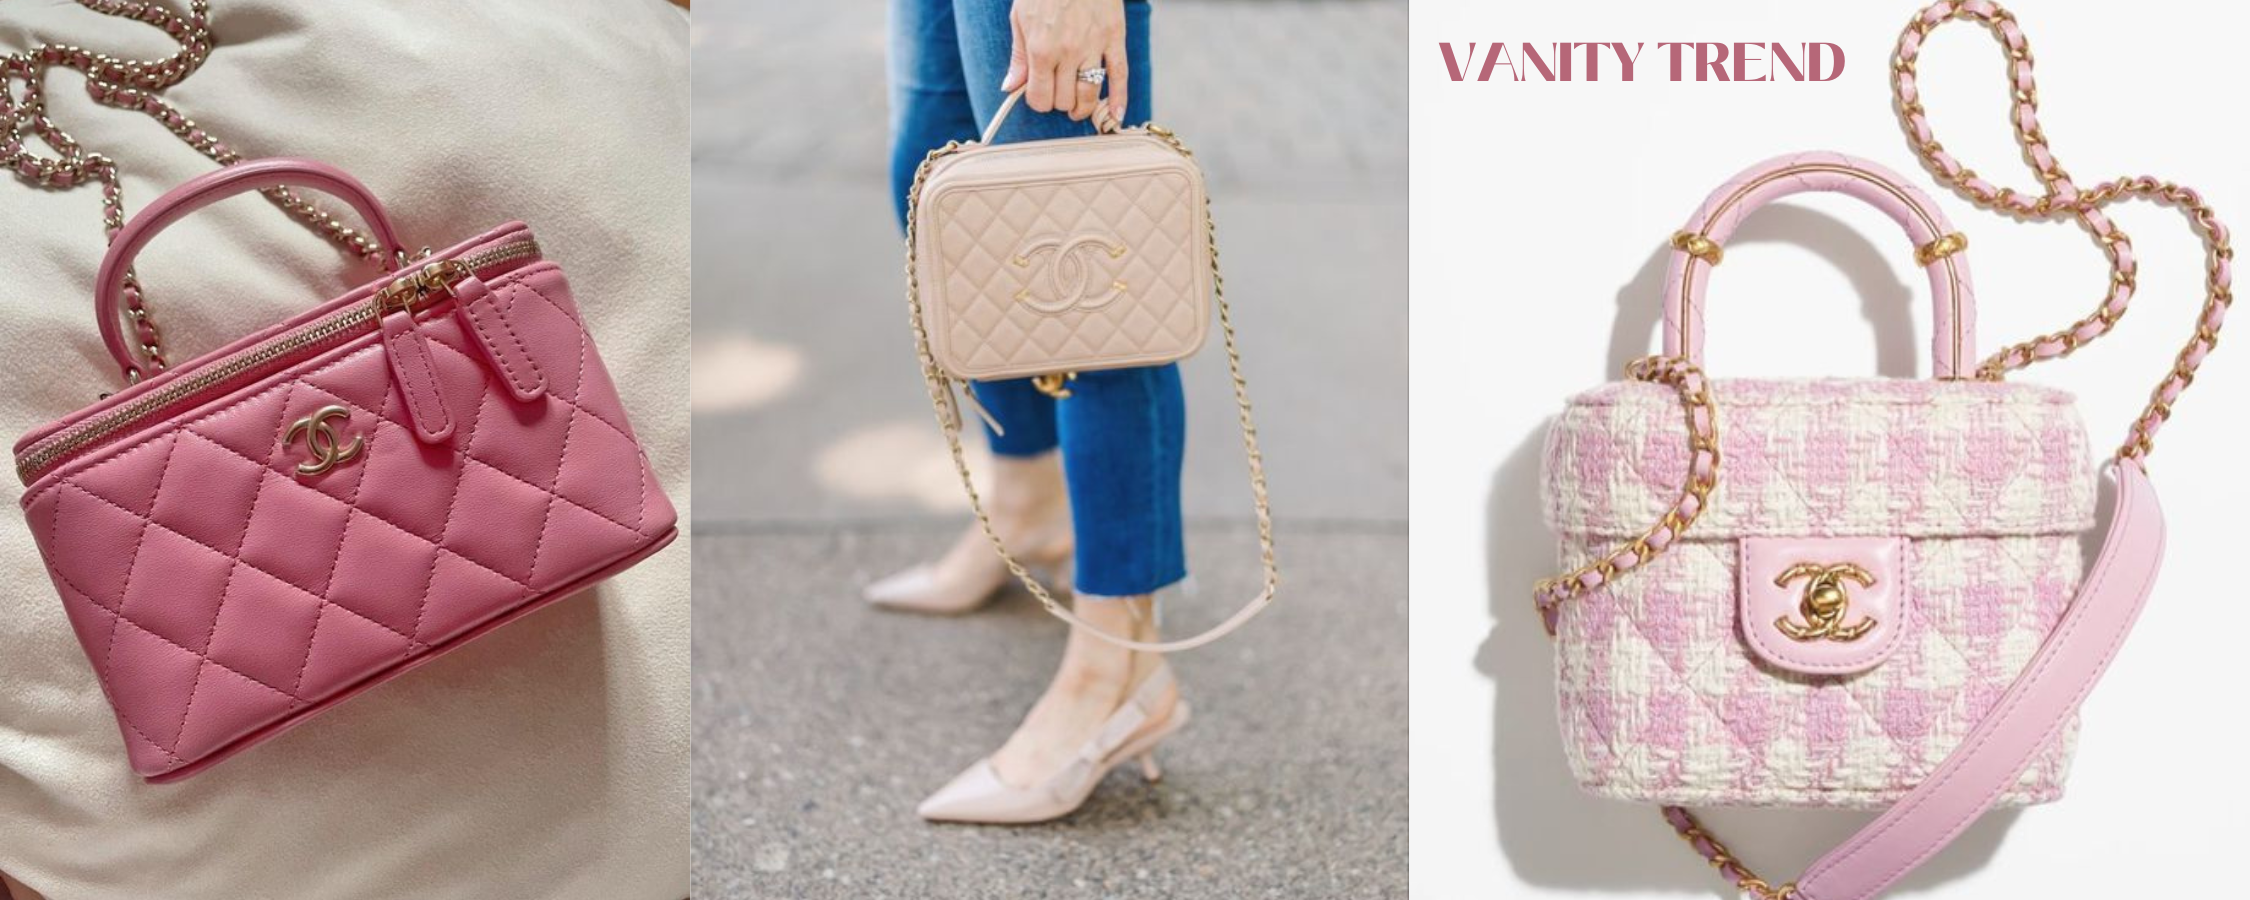 New Trend Alert: The Vanity Bag – l'Étoile de Saint Honoré